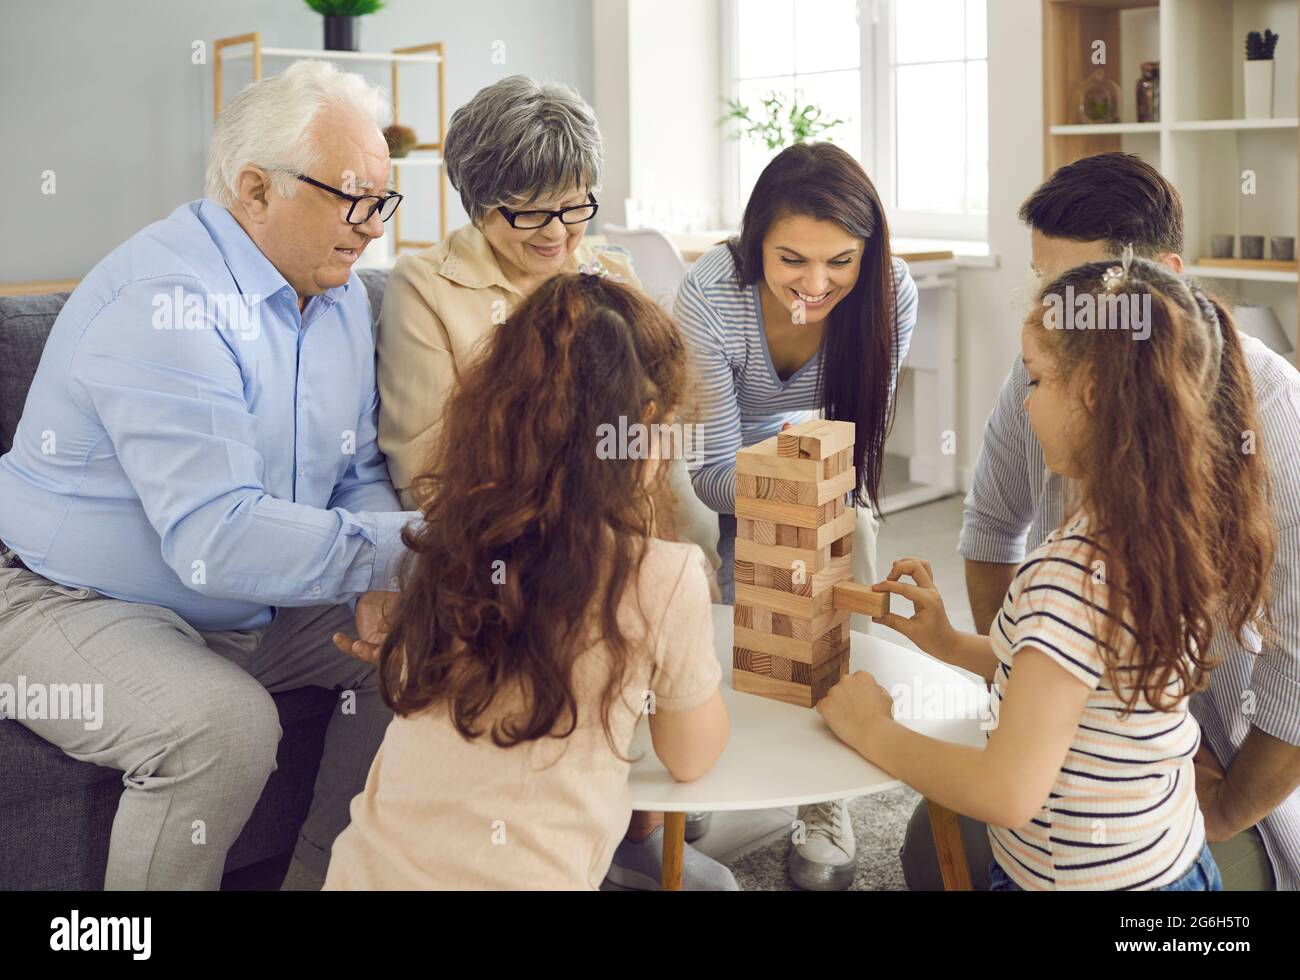 Die glückliche große Familie spielt zu Hause Jenga und wechselt sich ab, indem sie Ziegelsteine aus einem Holzturm herausholt. Stockfoto